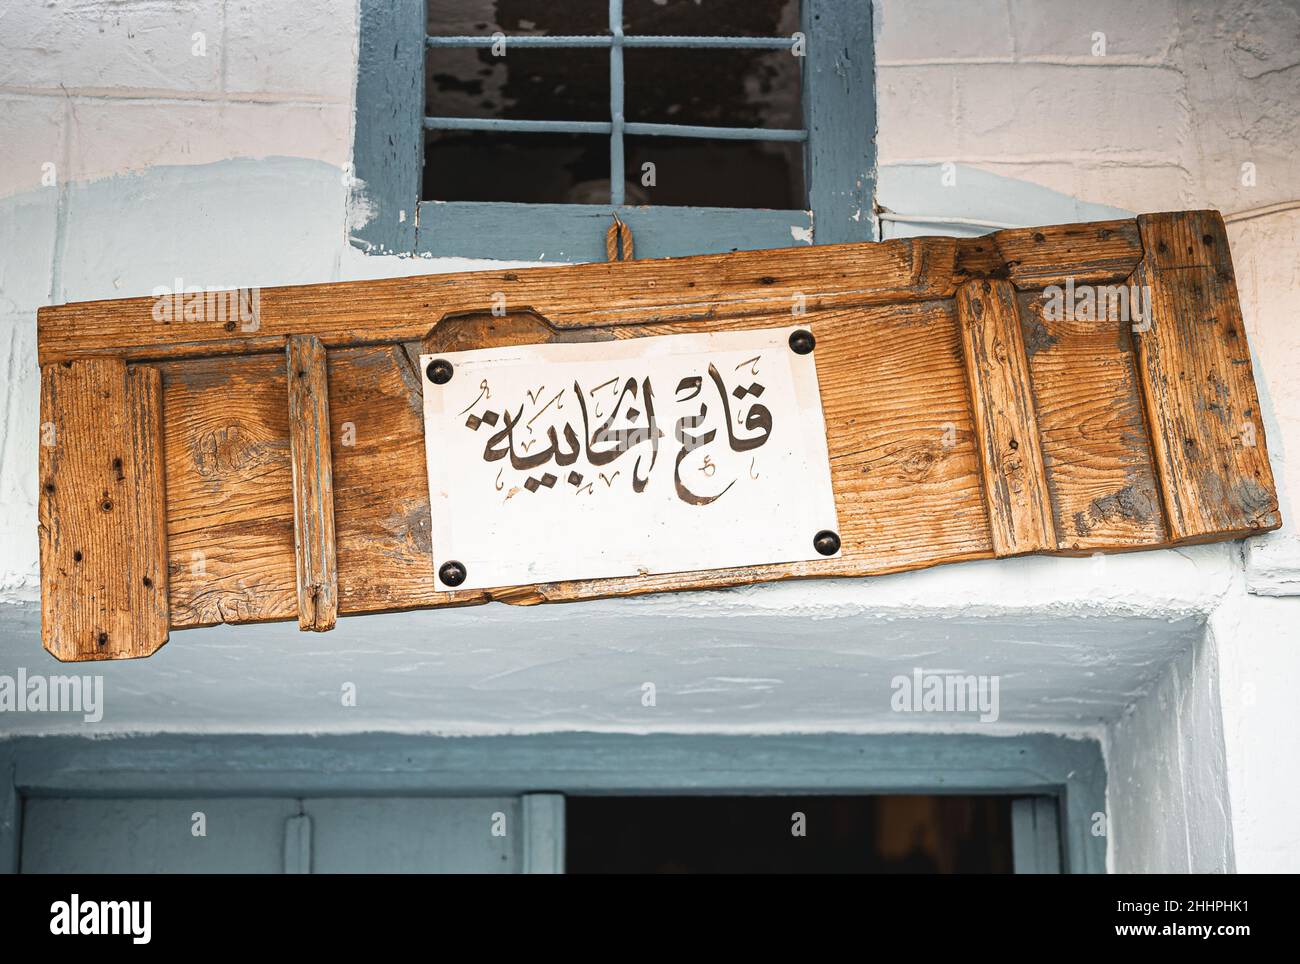 Der Name eines traditionellen Ladens in Tunis, geschrieben auf einer alten Holztür in arabischer Kalligraphie Stockfoto